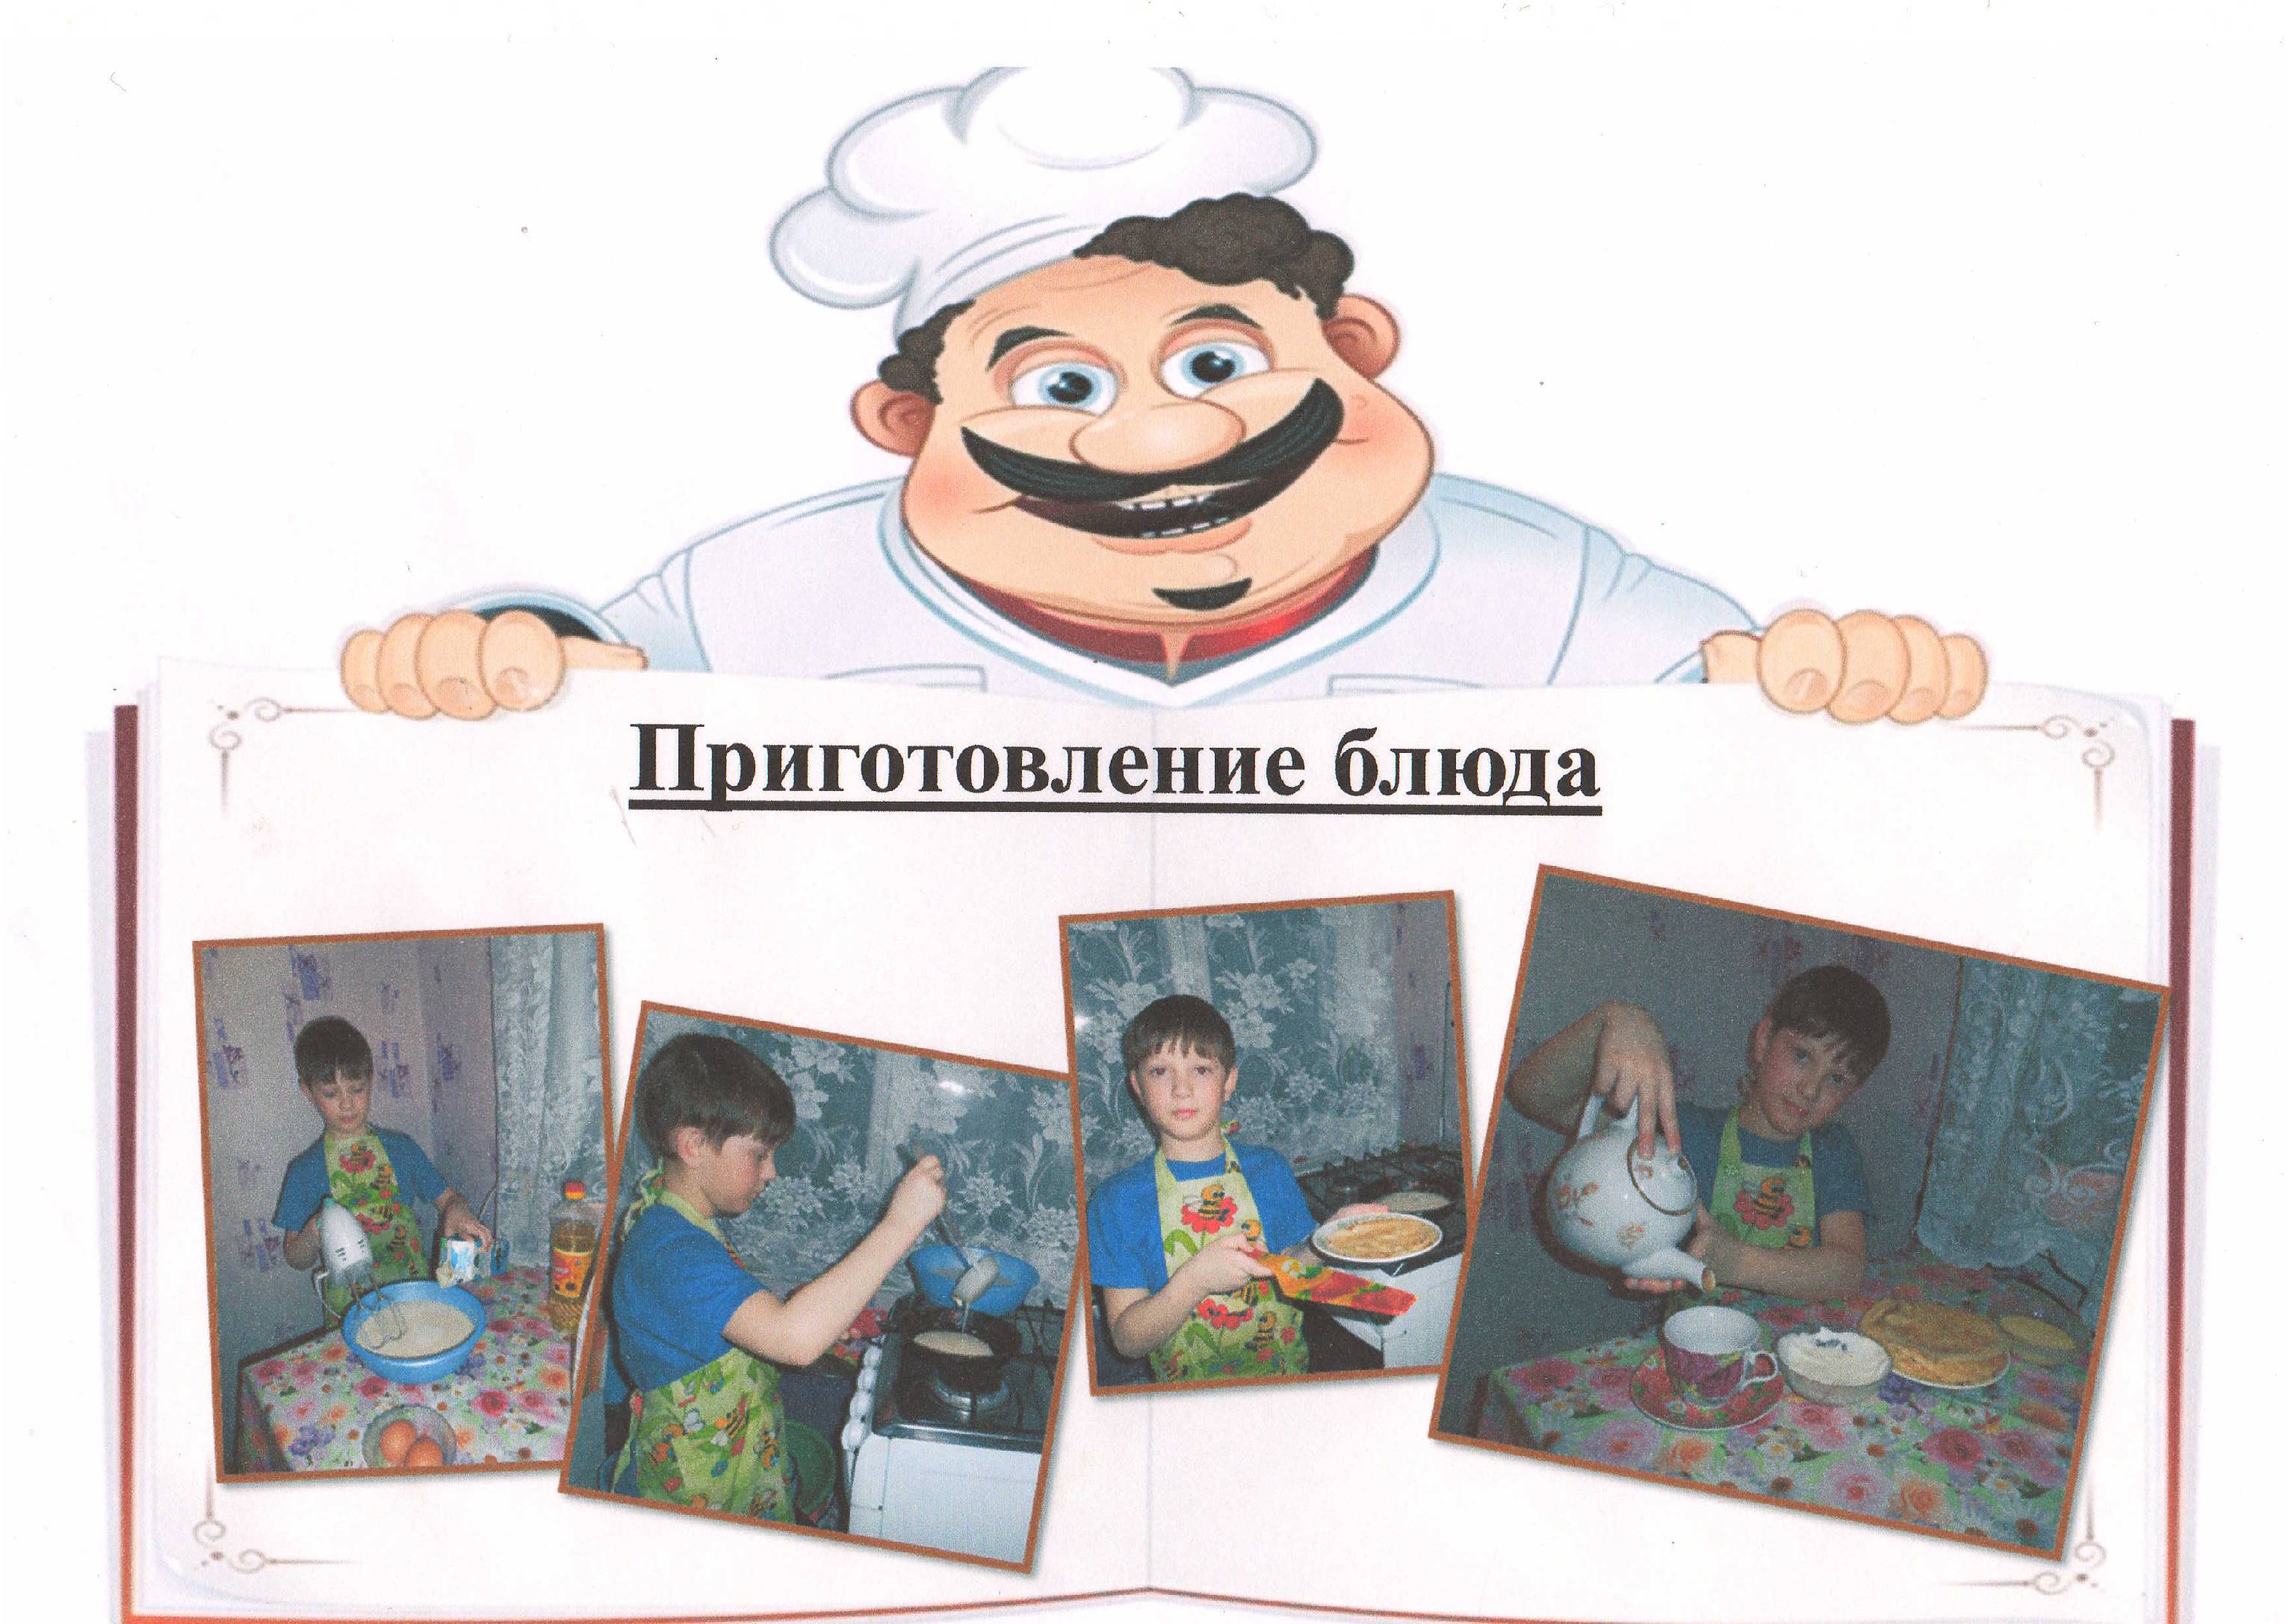 Детский проект Пишем кулинарную книгу программы Разговор о правильном питании